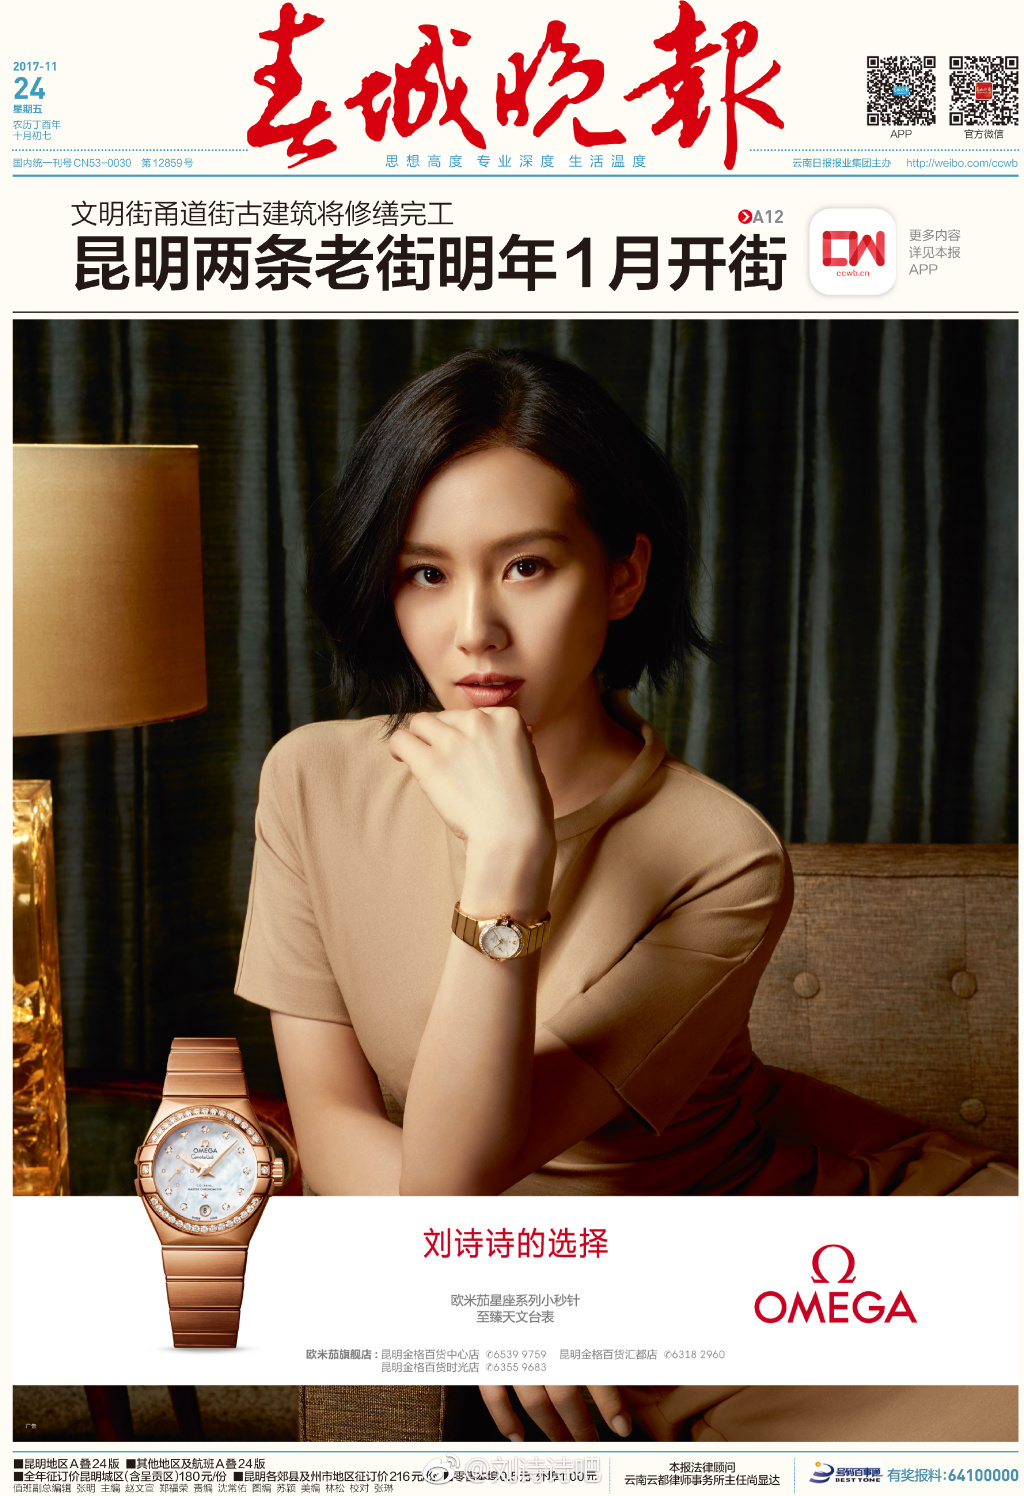 4、欧米茄刘诗诗同款：刘诗诗最近代言过手表品牌吗？是欧米茄吗？ 